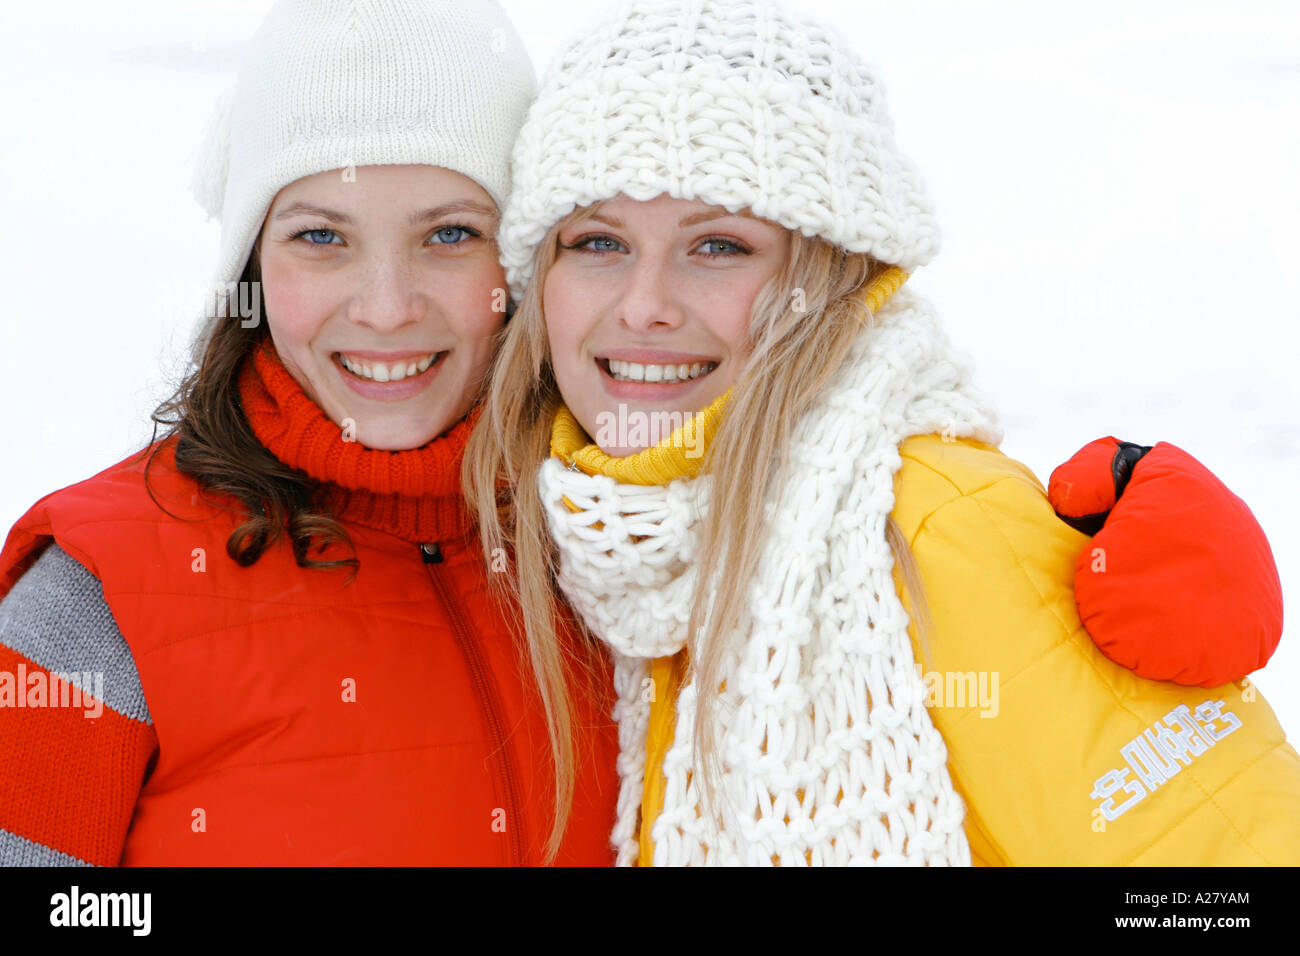 Zwei Frauen im Winterurlaub, two Women in Winter Holiday Stock Photo